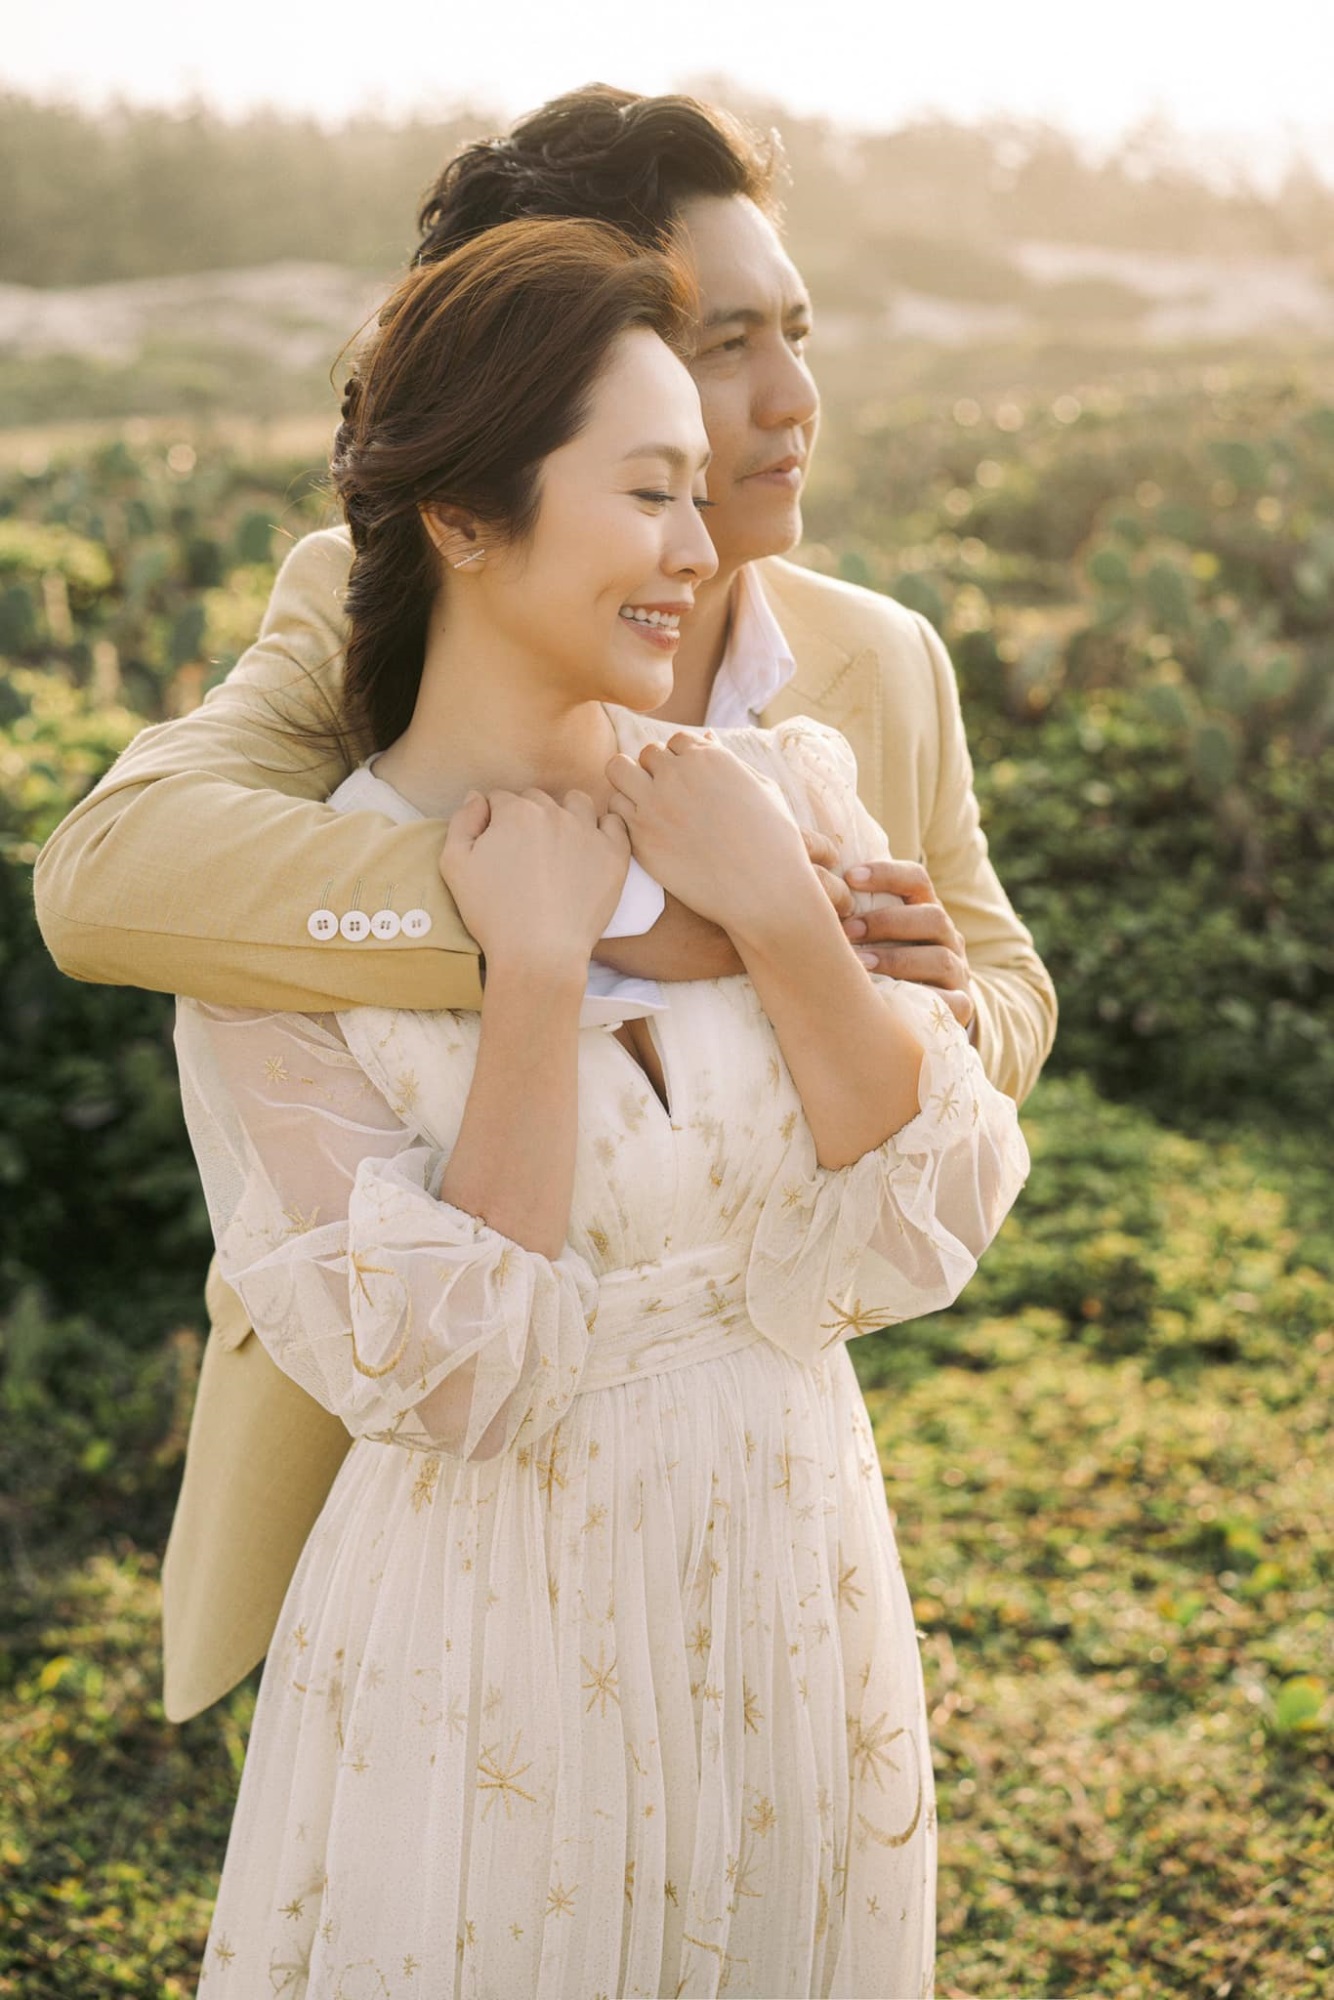 Nhân dịp kỷ niệm 14 năm ngày cưới, Đức Thịnh gửi đôi lời ngọt ngào đến Thanh Thúy khiến netizen không khỏi phần xúc động, ghen tị với cặp đôi - Ảnh 4